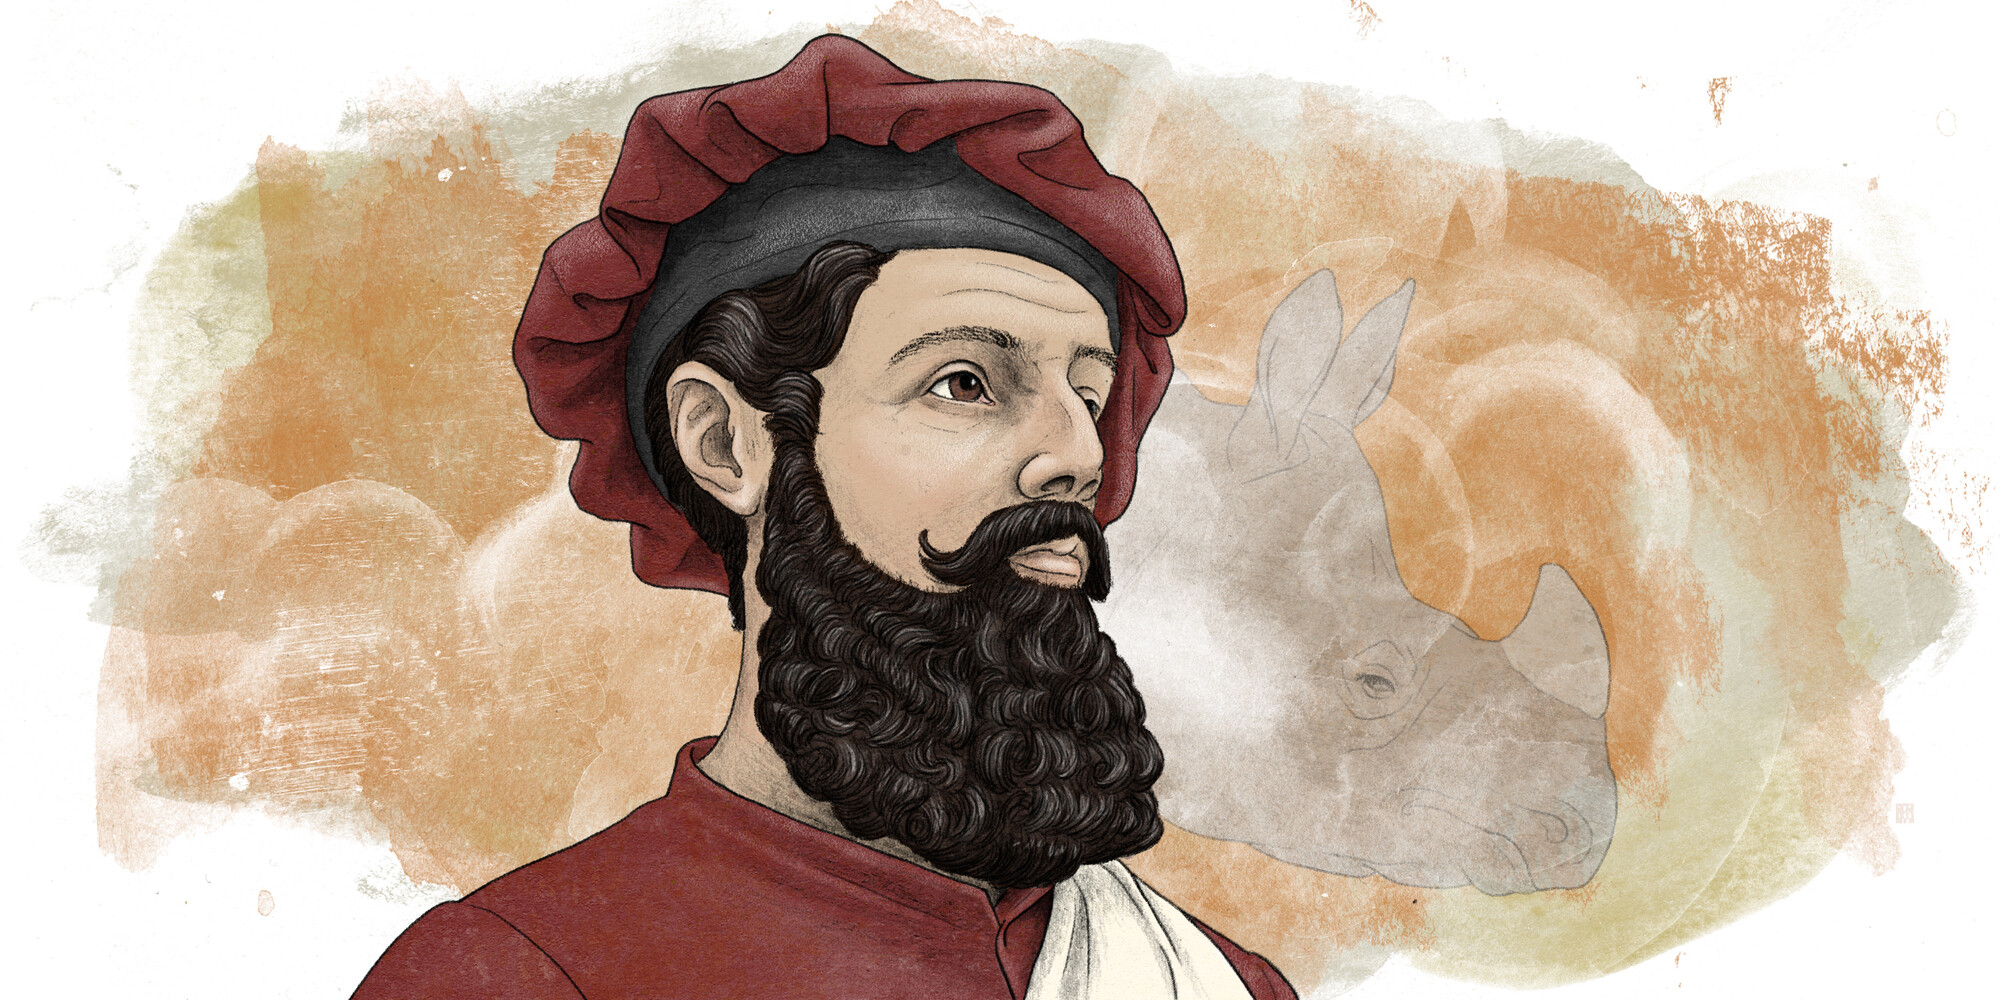 #1478 - OVT Zomers - De eerste persoon #2: Sanne Frequin over Het reisverslag van Marco Polo